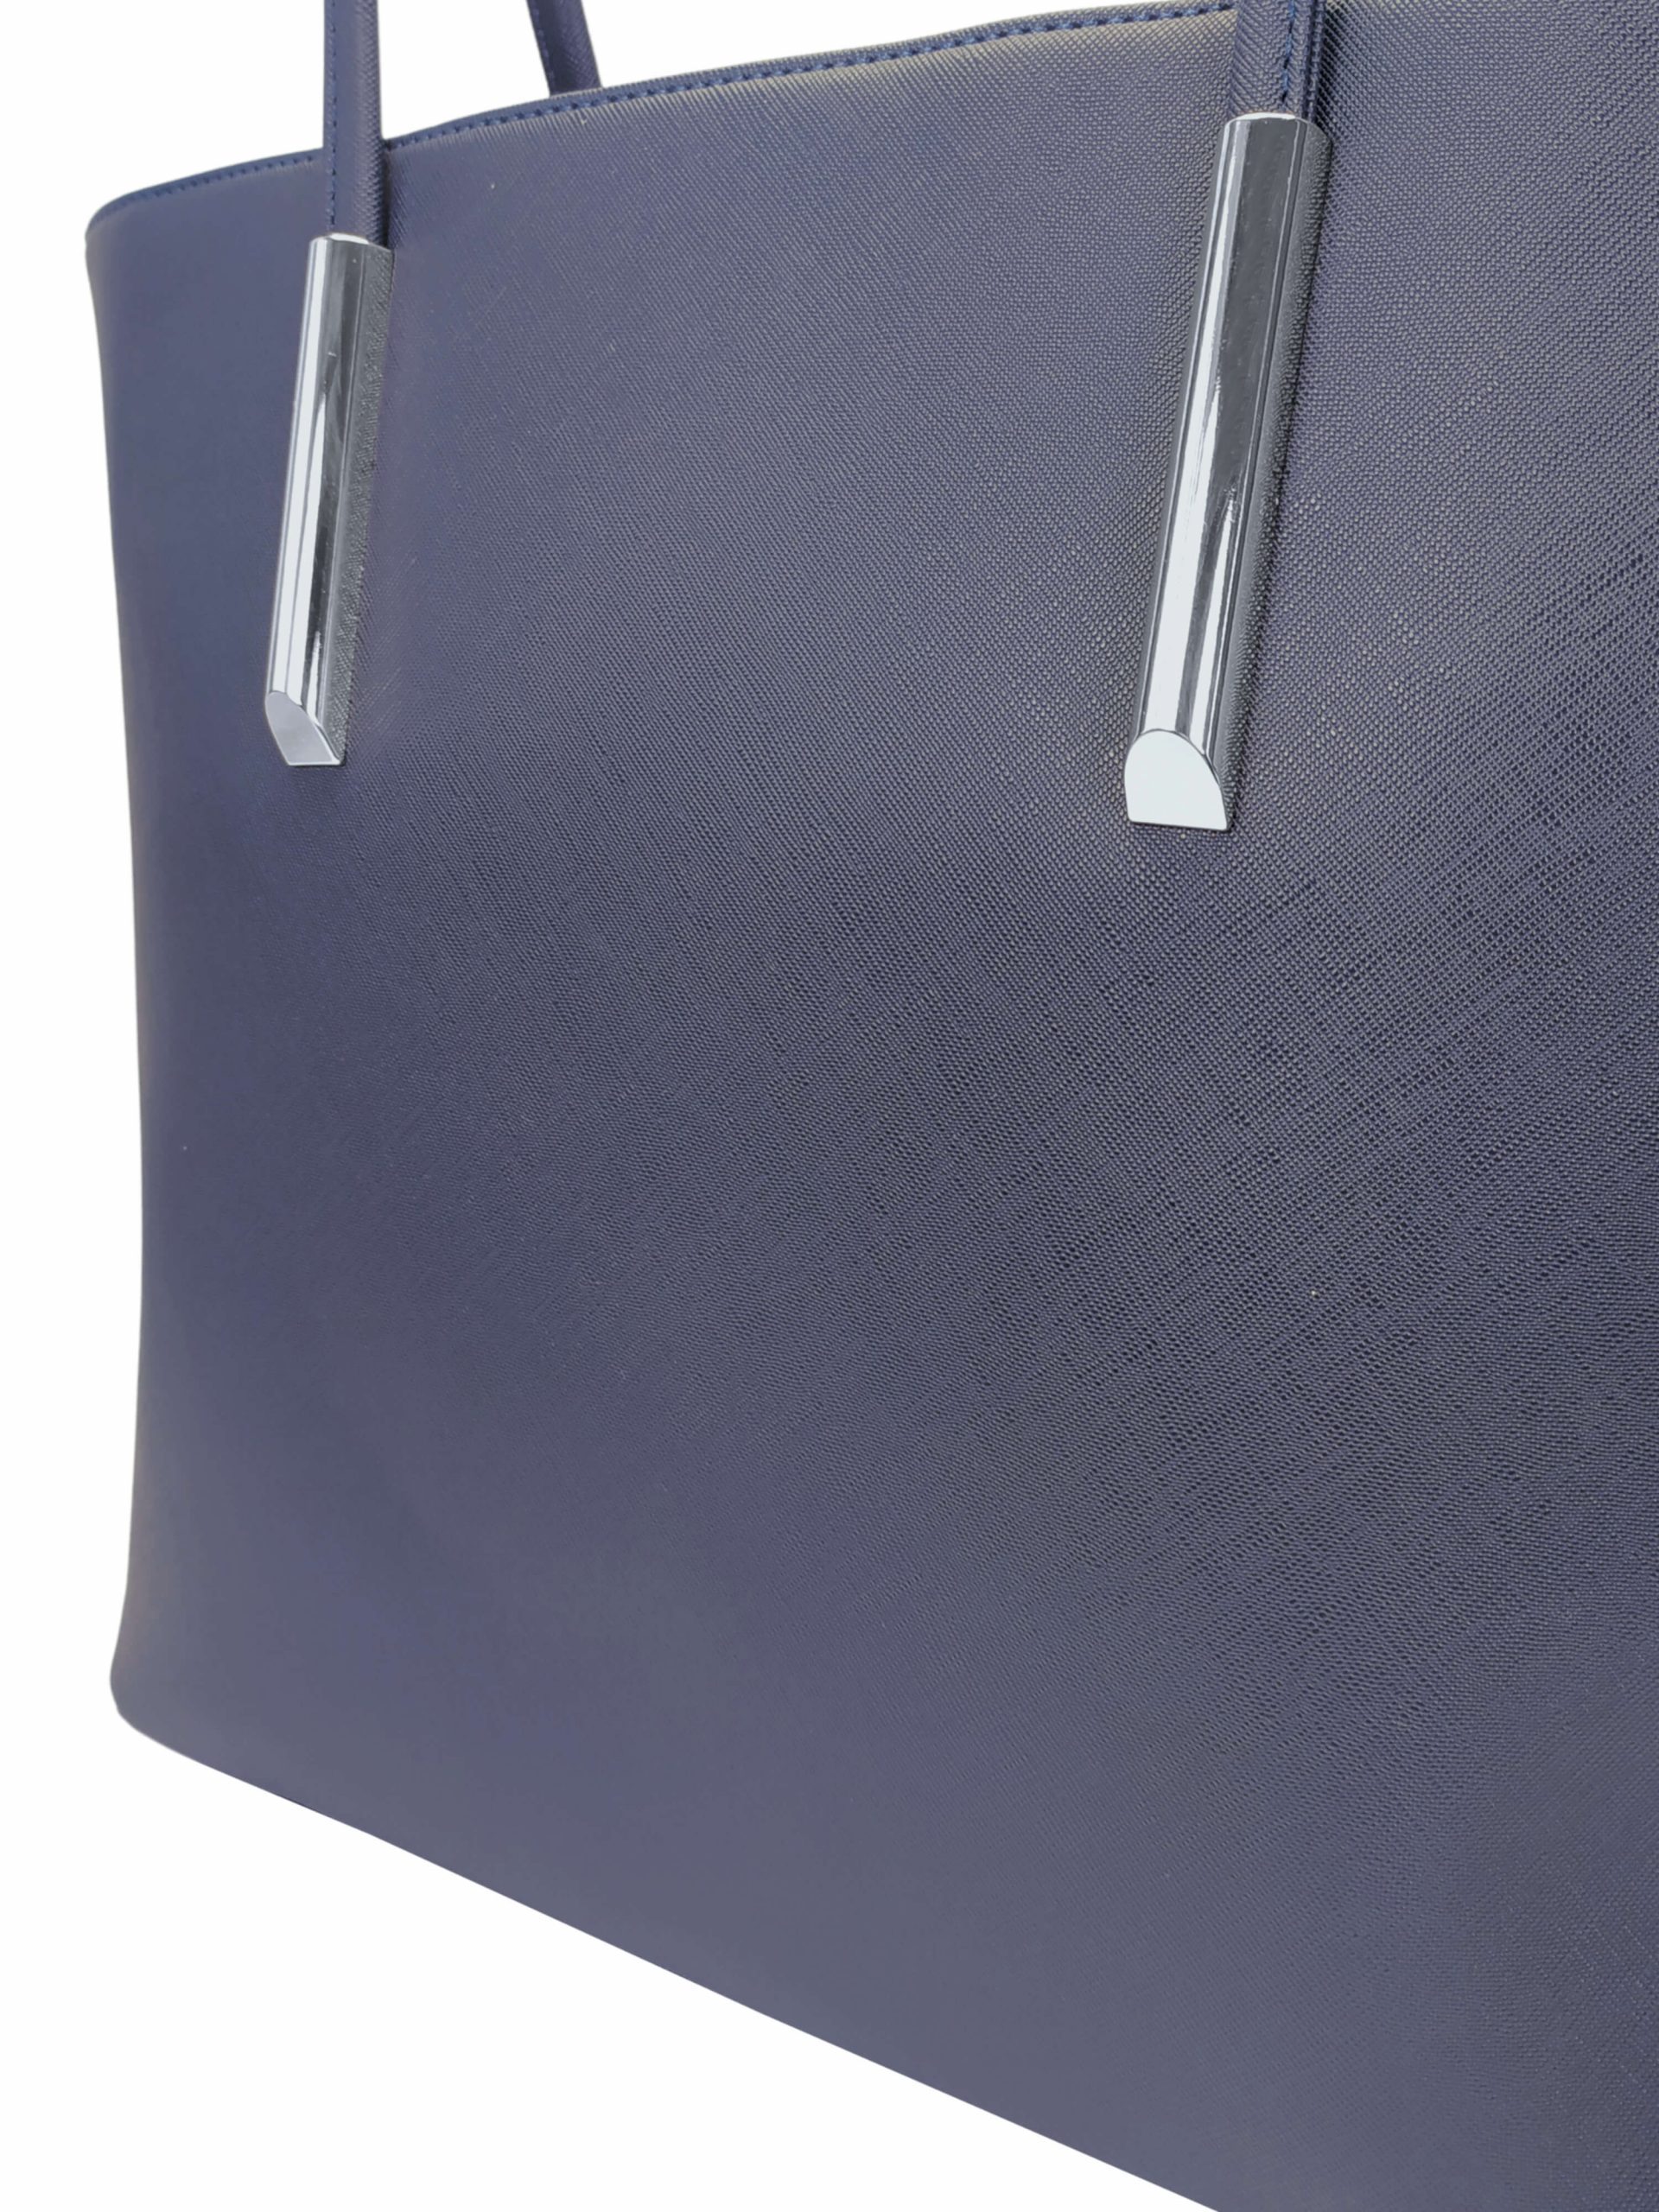 Moderní kabelka přes rameno, Tapple, H17429S, tmavě modrá, detail kabelky přes rameno